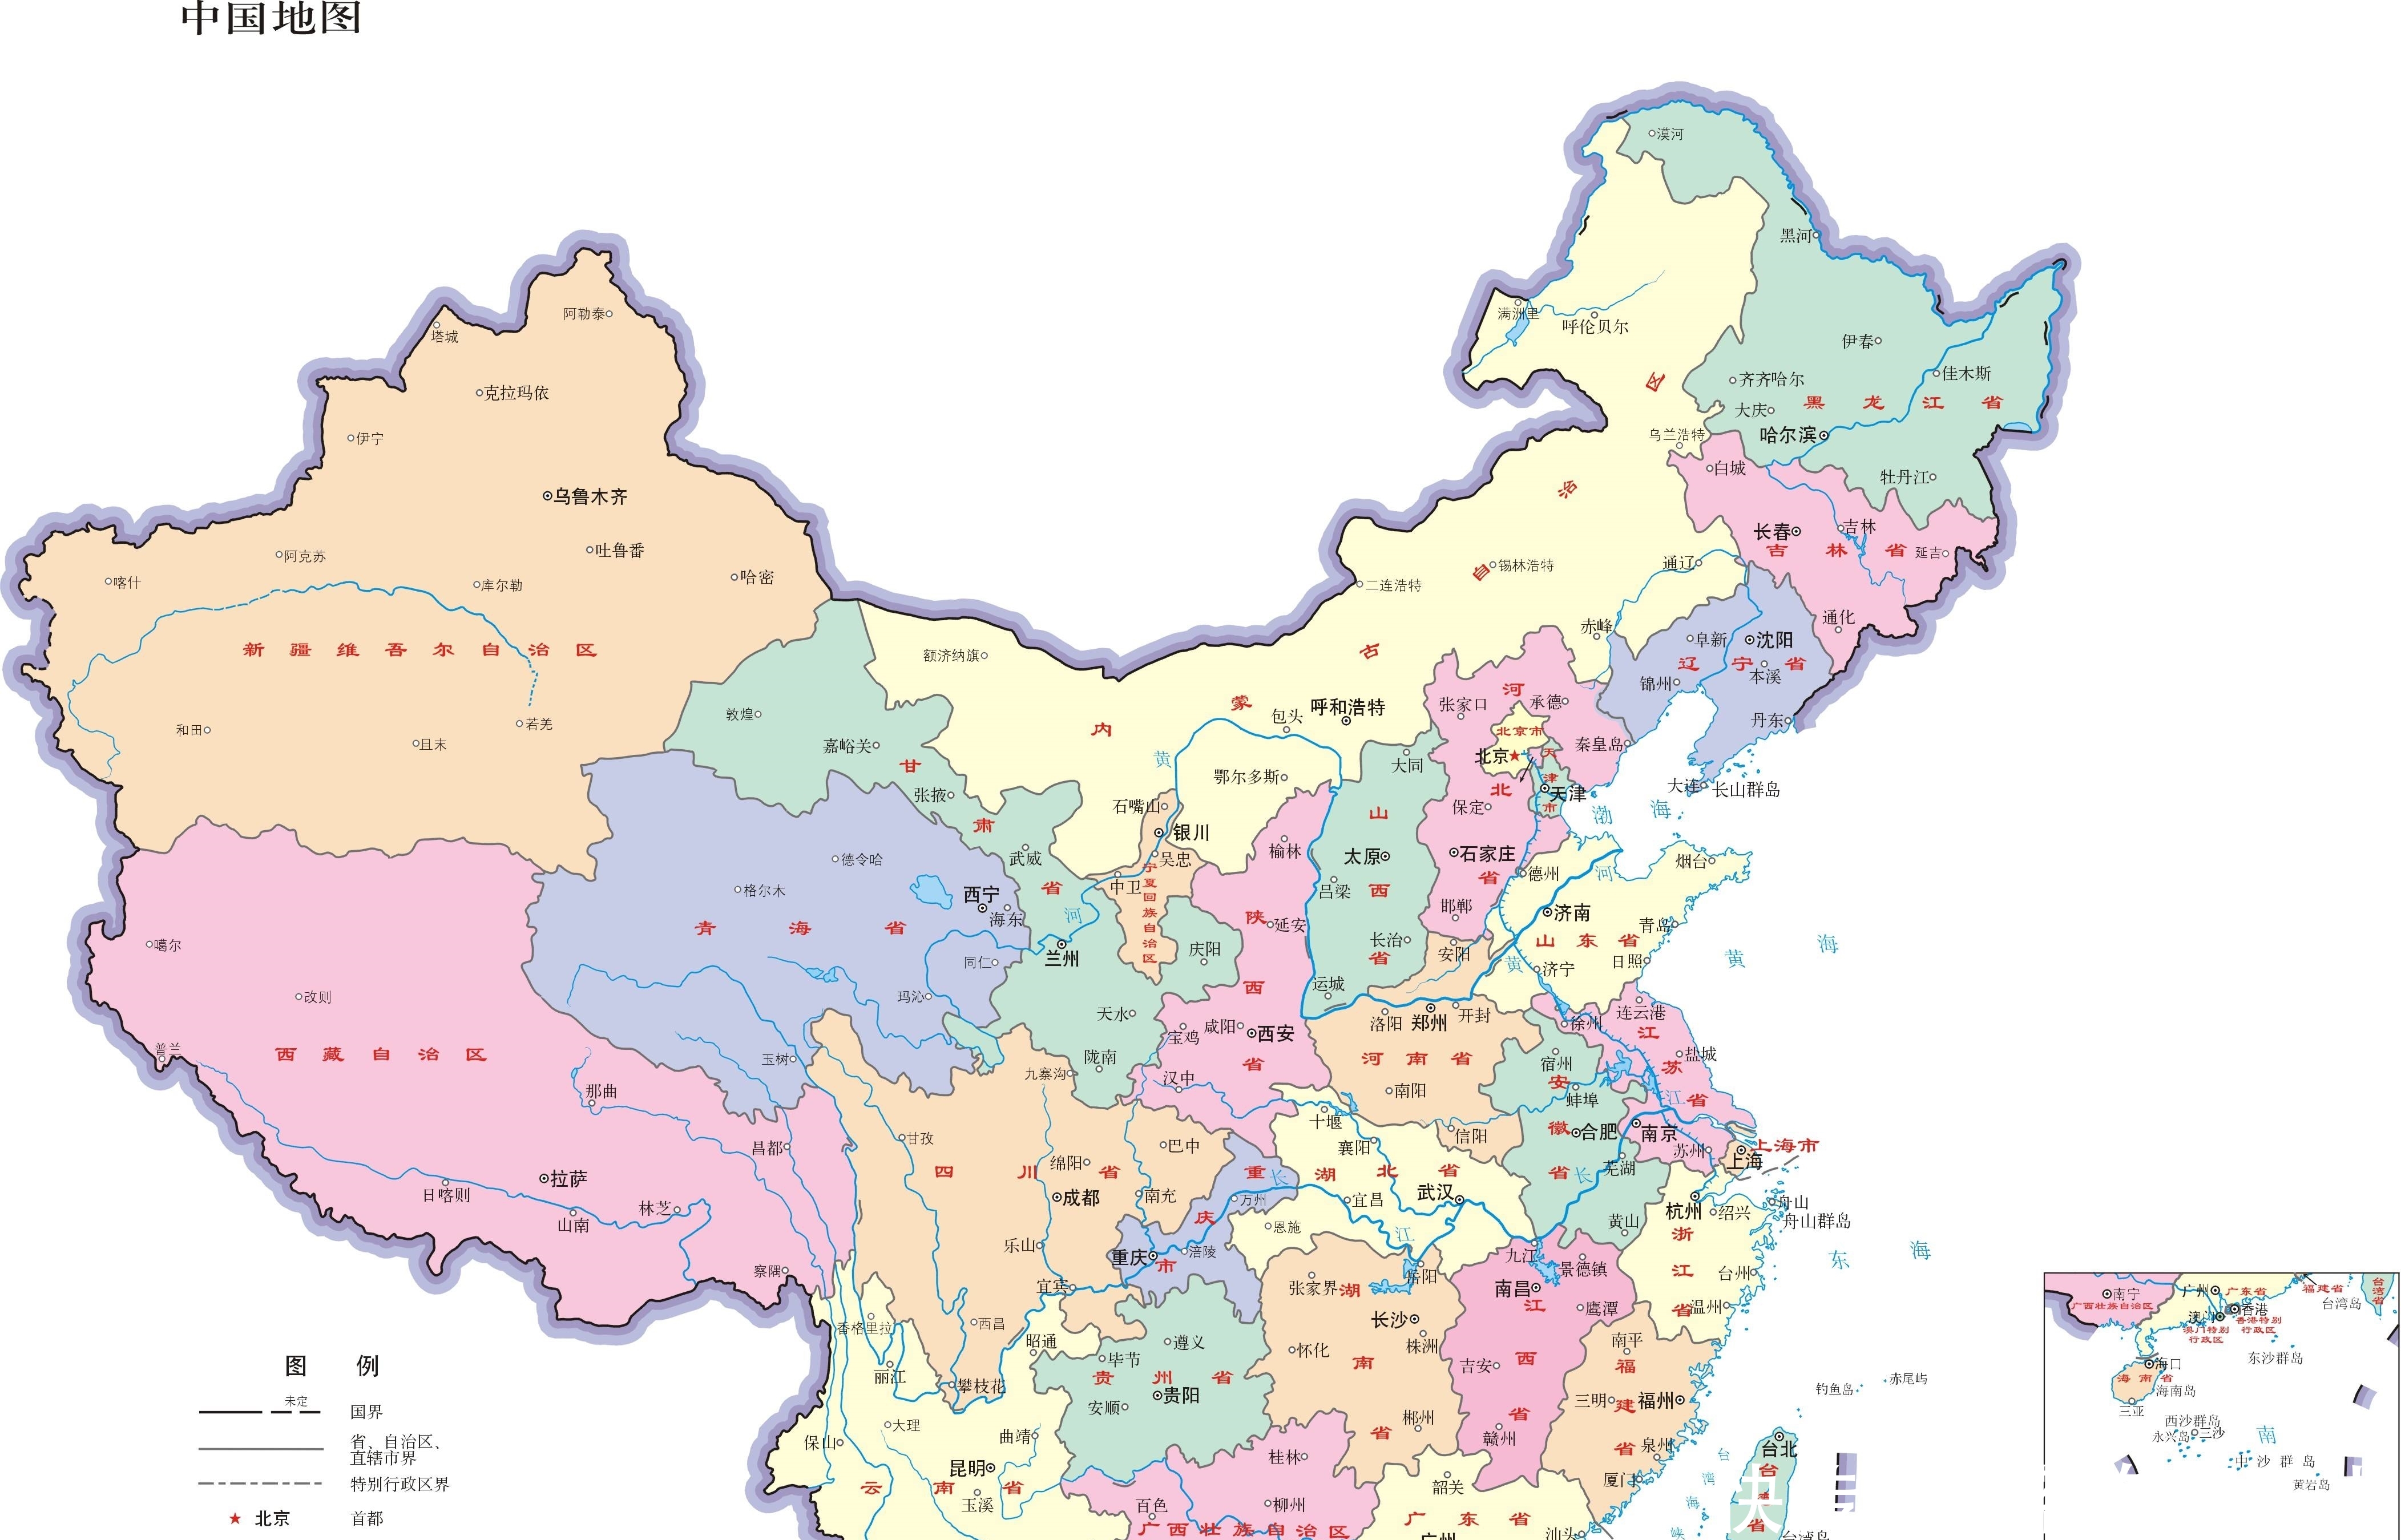 中国究竟有多少个县?